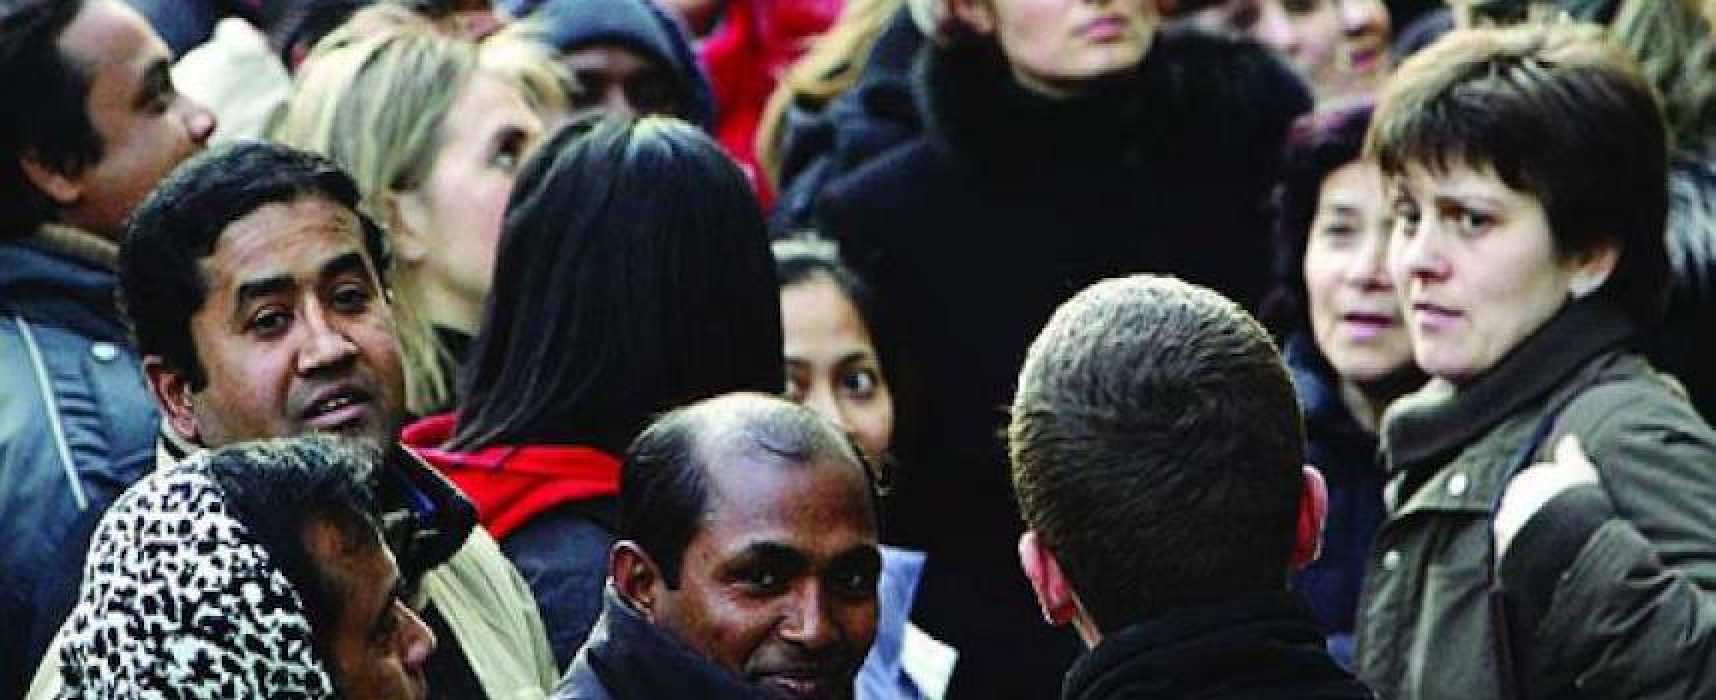 Etnie Aps: “In ambitro Trani-Bisceglie un passo indietro nell’integrazione dei cittadini stranieri”